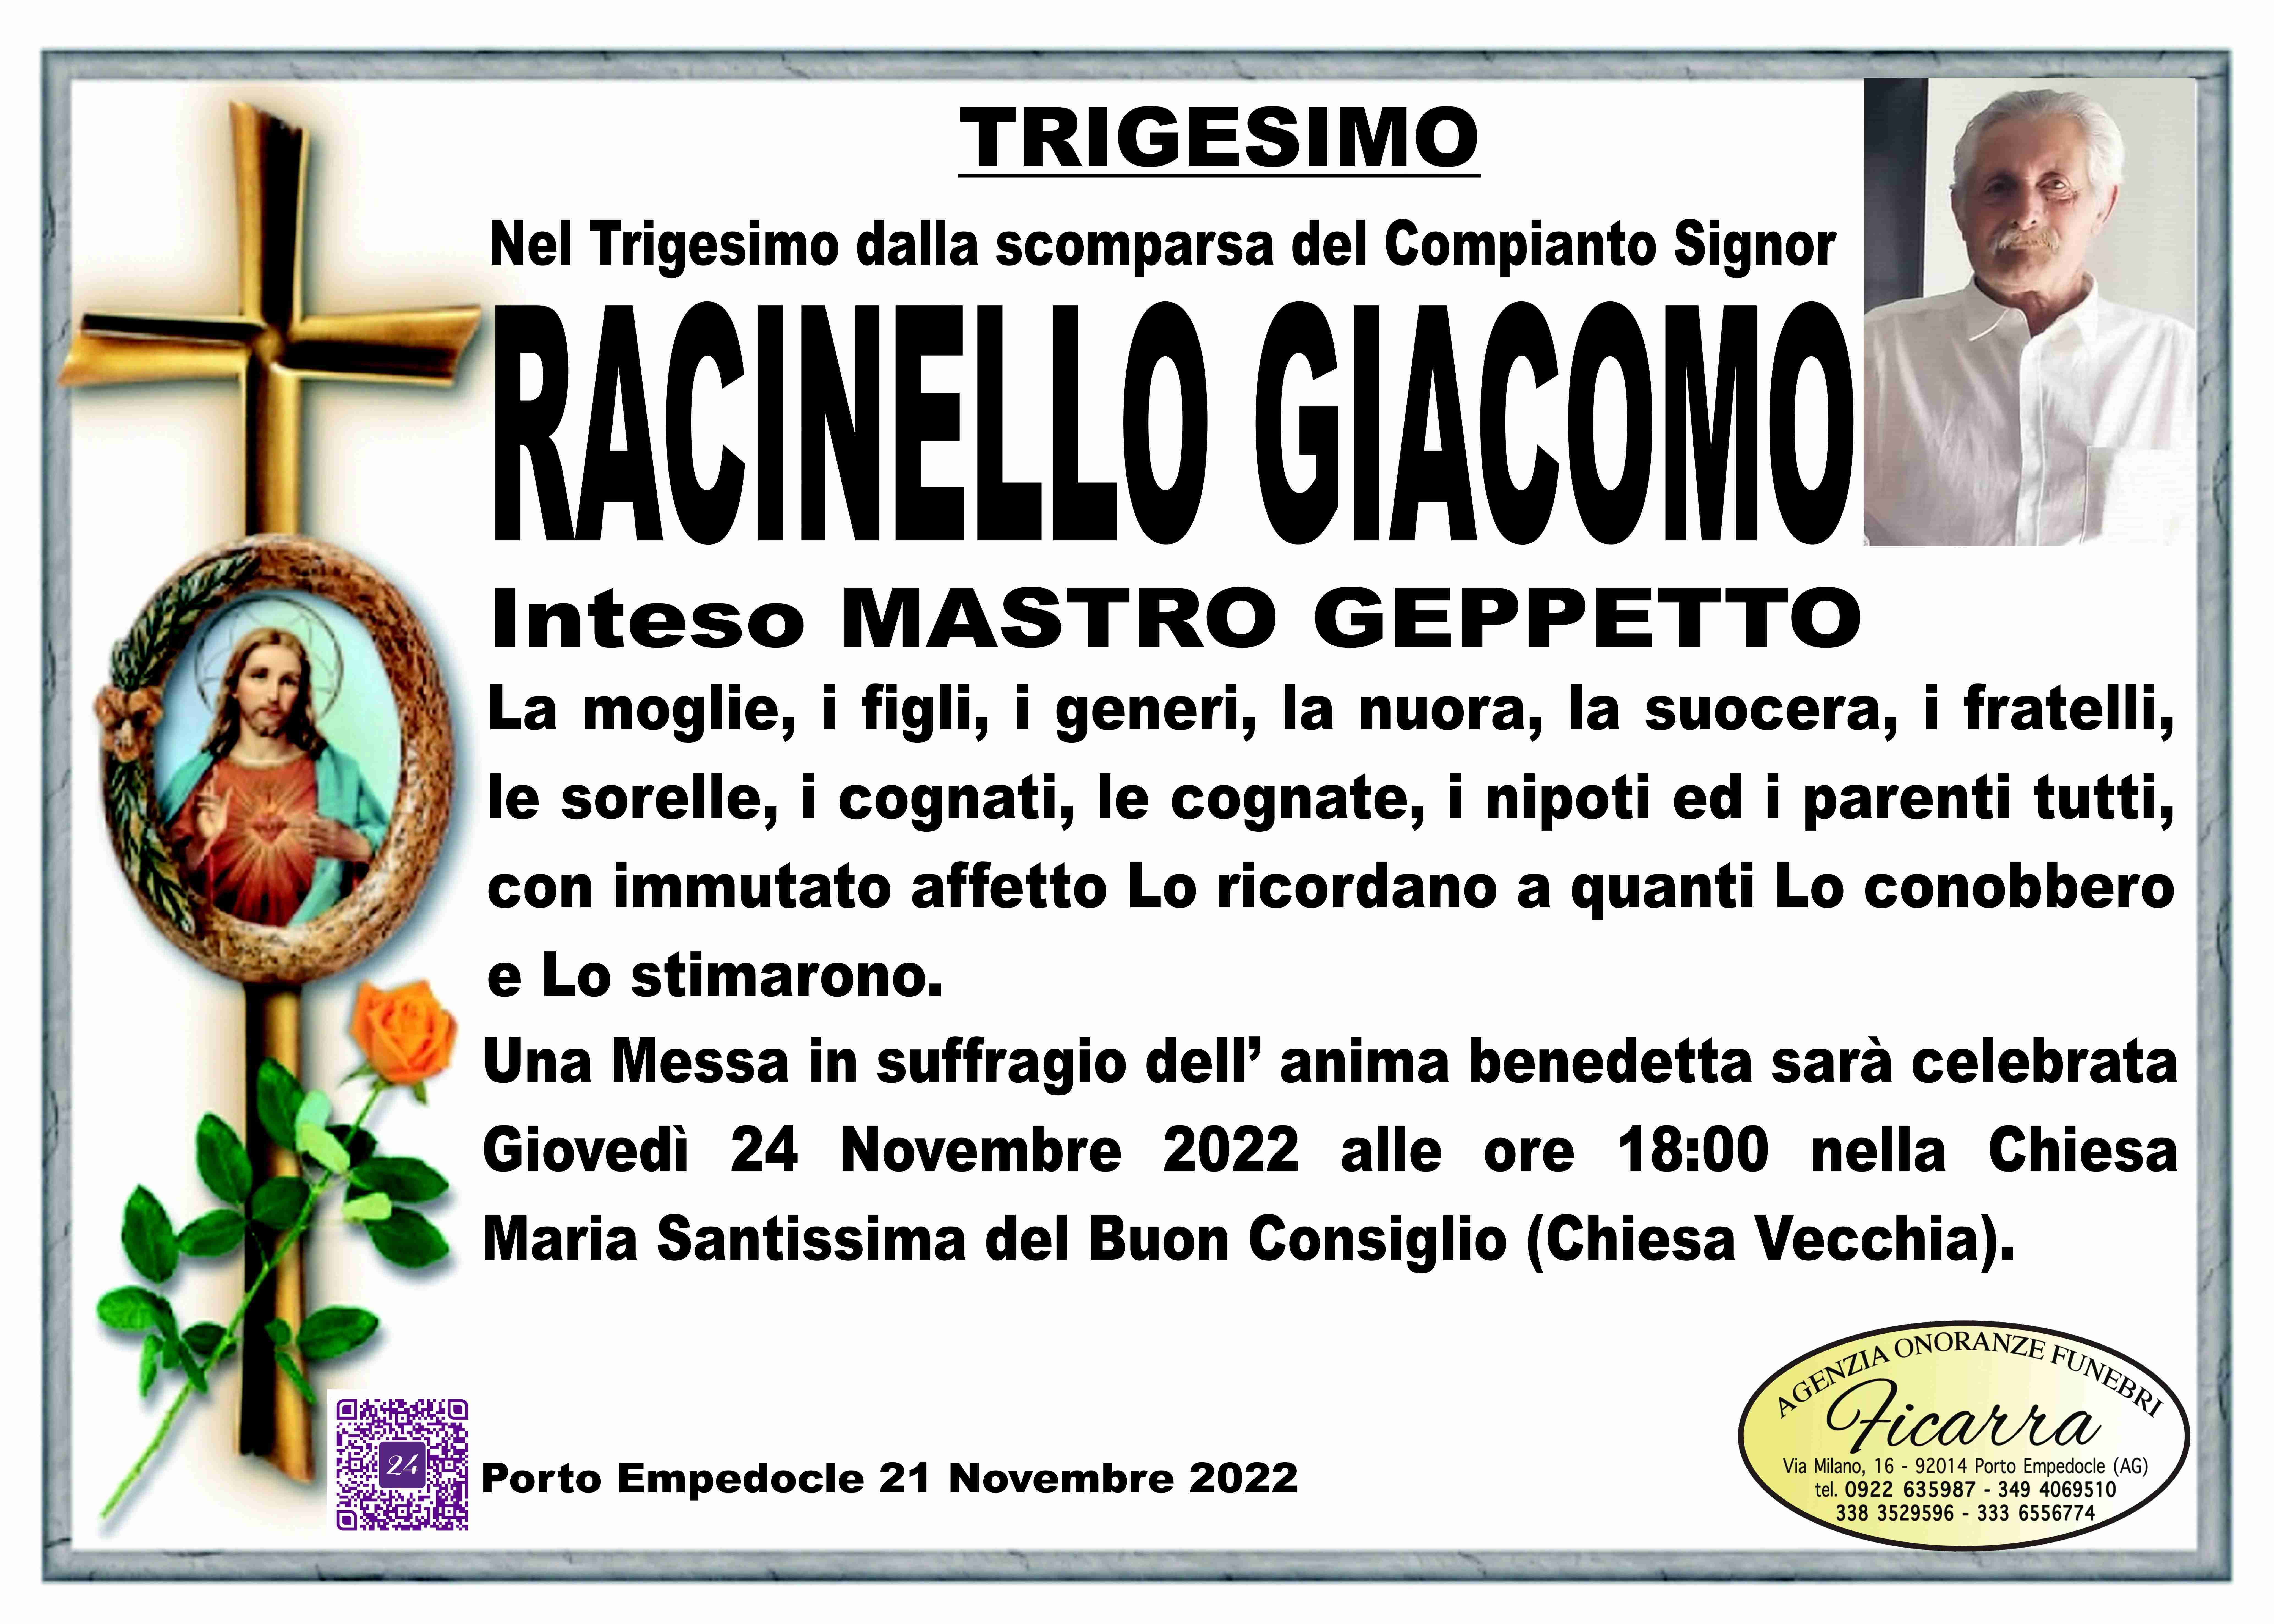 Giacomo Racinello